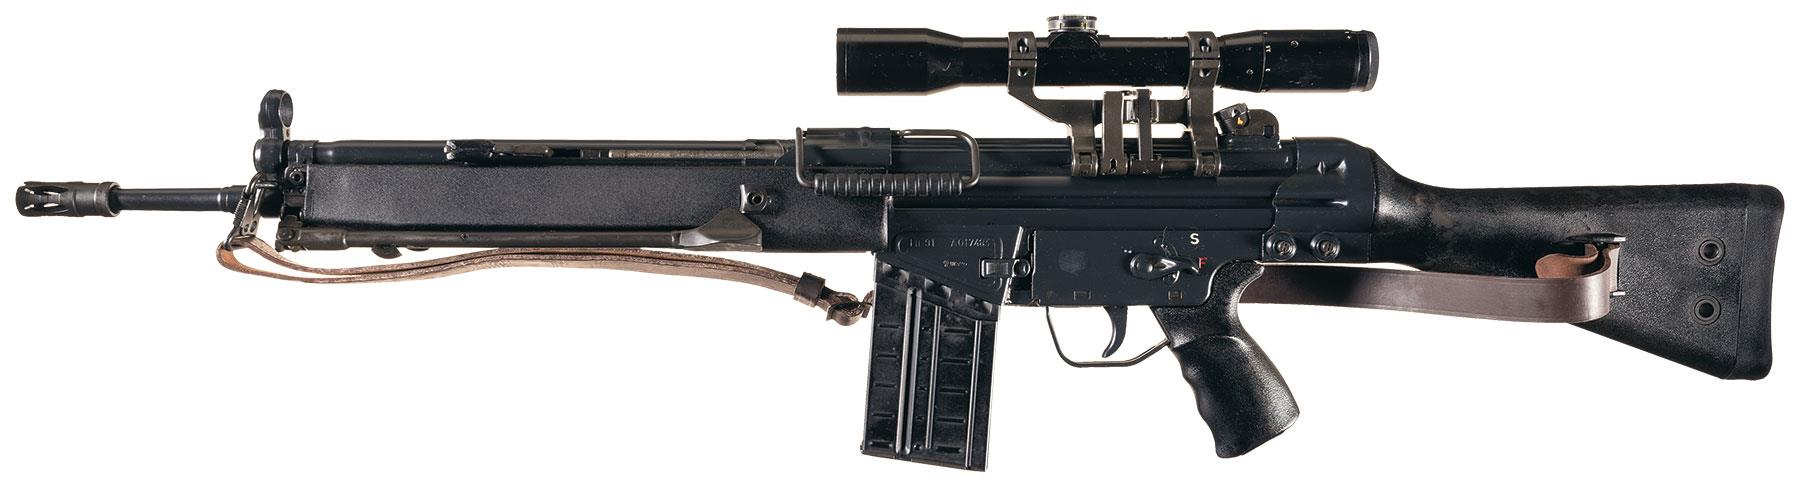 Heckler & Koch - HK-91.